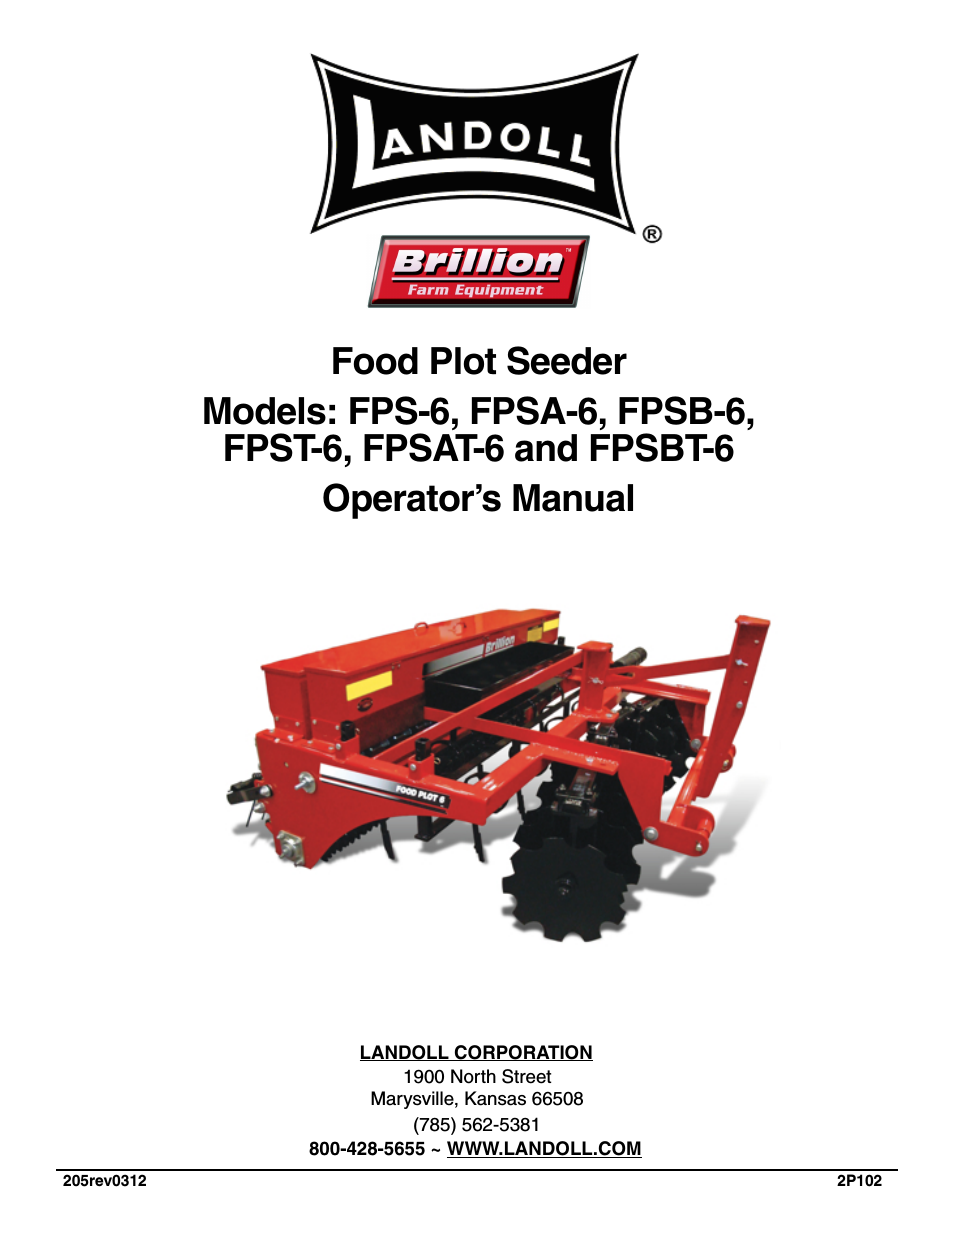 FPSBT-6 Food Plot Seeder